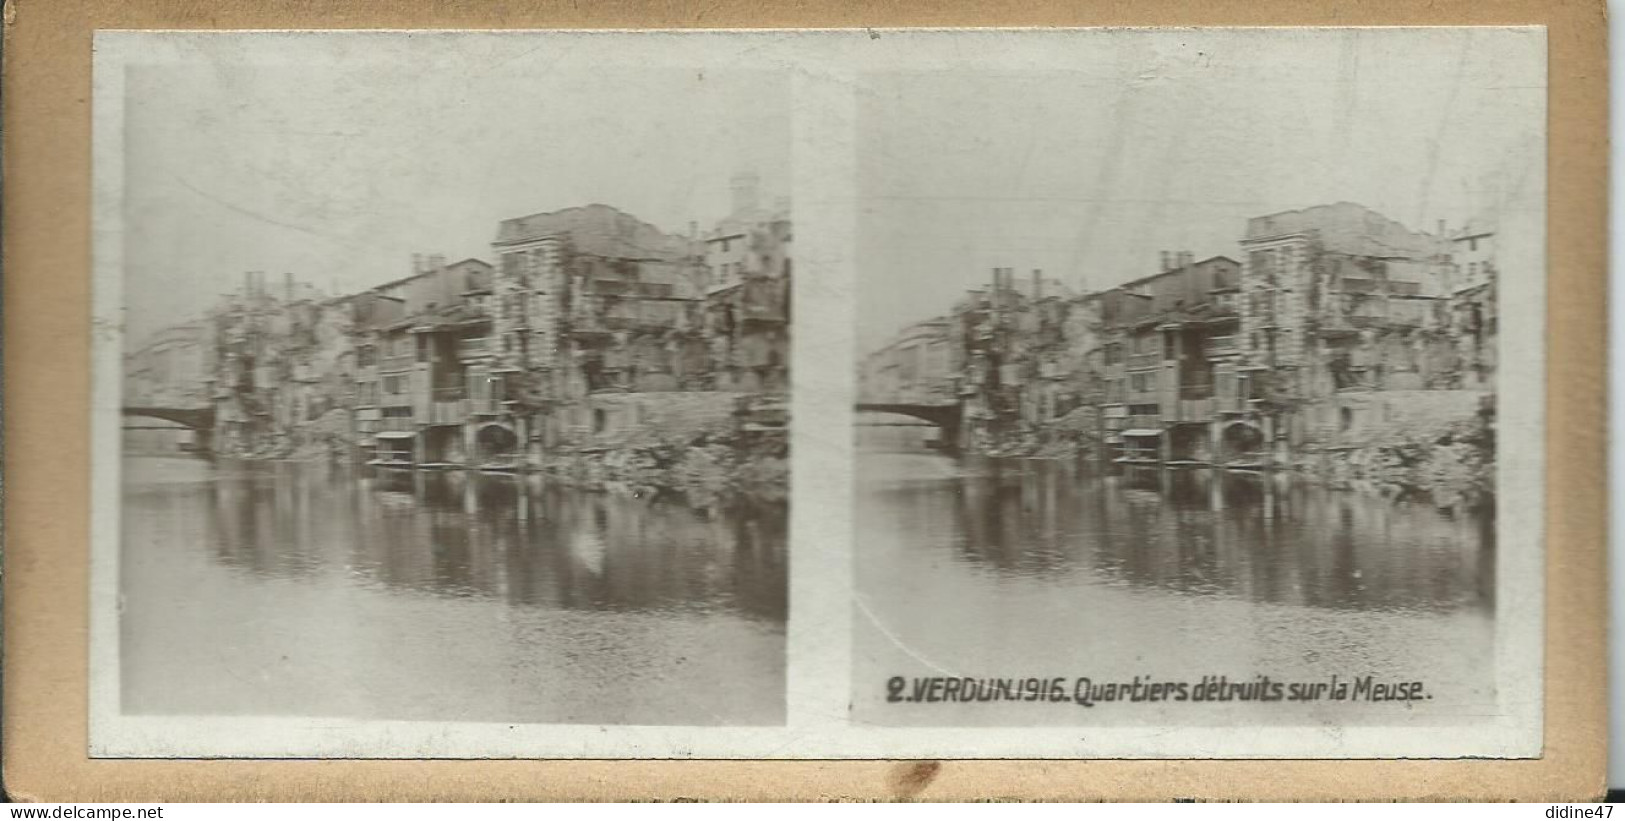 PHOTOS STÉRÉOSCOPIQUES - VERDUN - 1916 Quartier Détruit Sur La Meuse - Stereoscopio